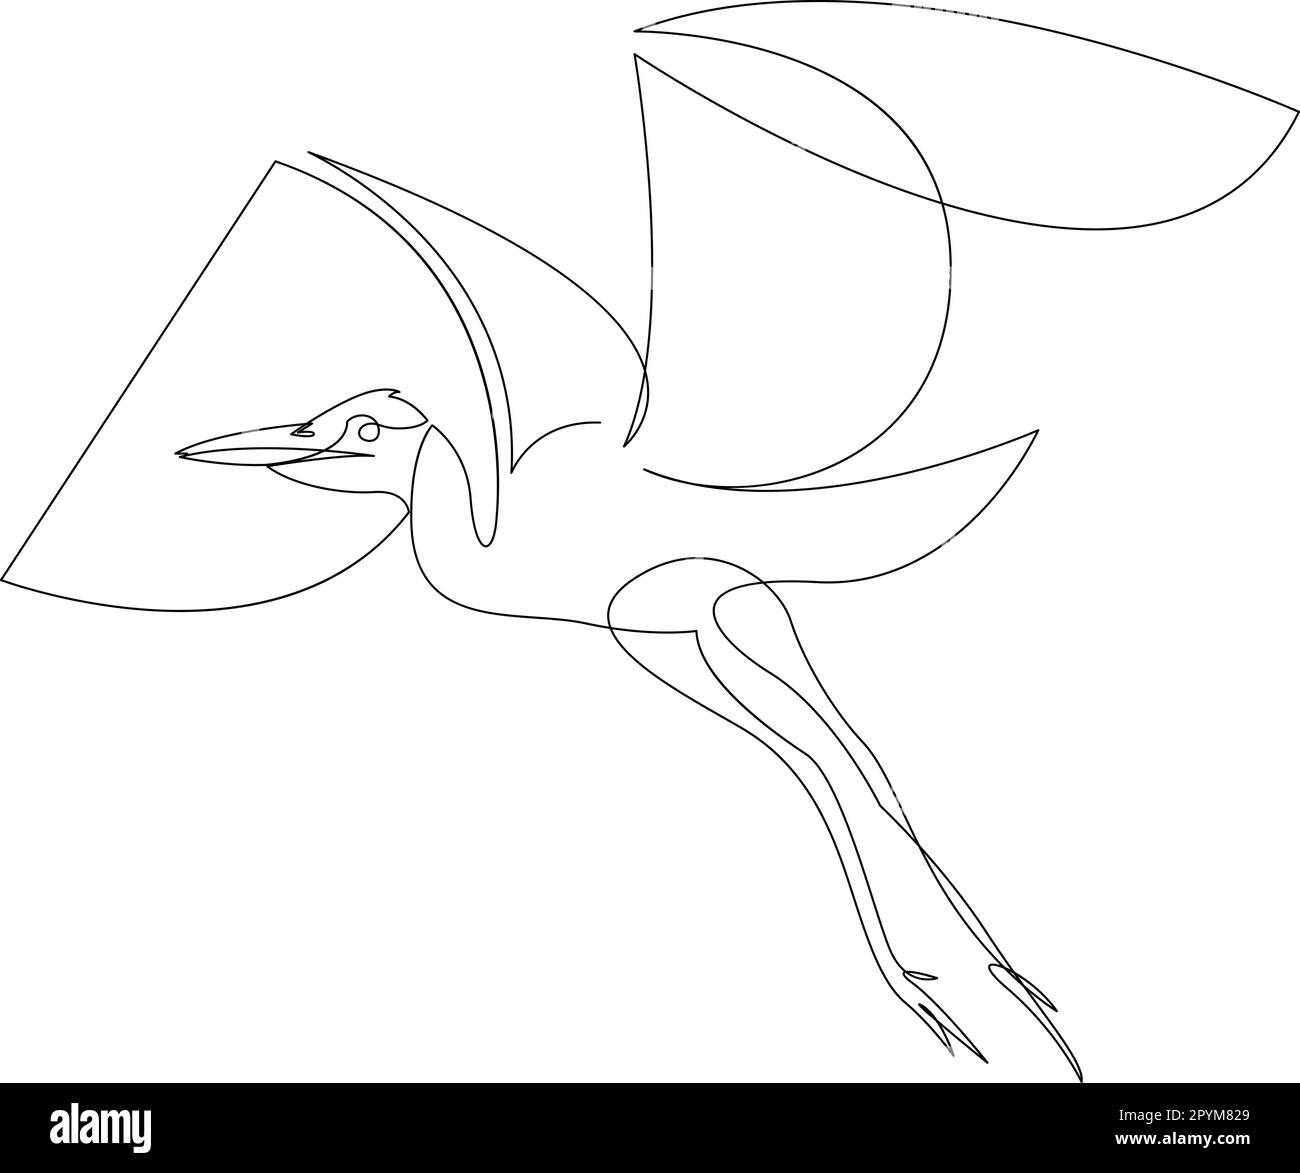 Cicogna che vola nel cielo disegno a linea continua. Uccello Heron in volo una linea d'arte Schizzo lineare nero minimalista isolato su sfondo bianco. VECTO Illustrazione Vettoriale